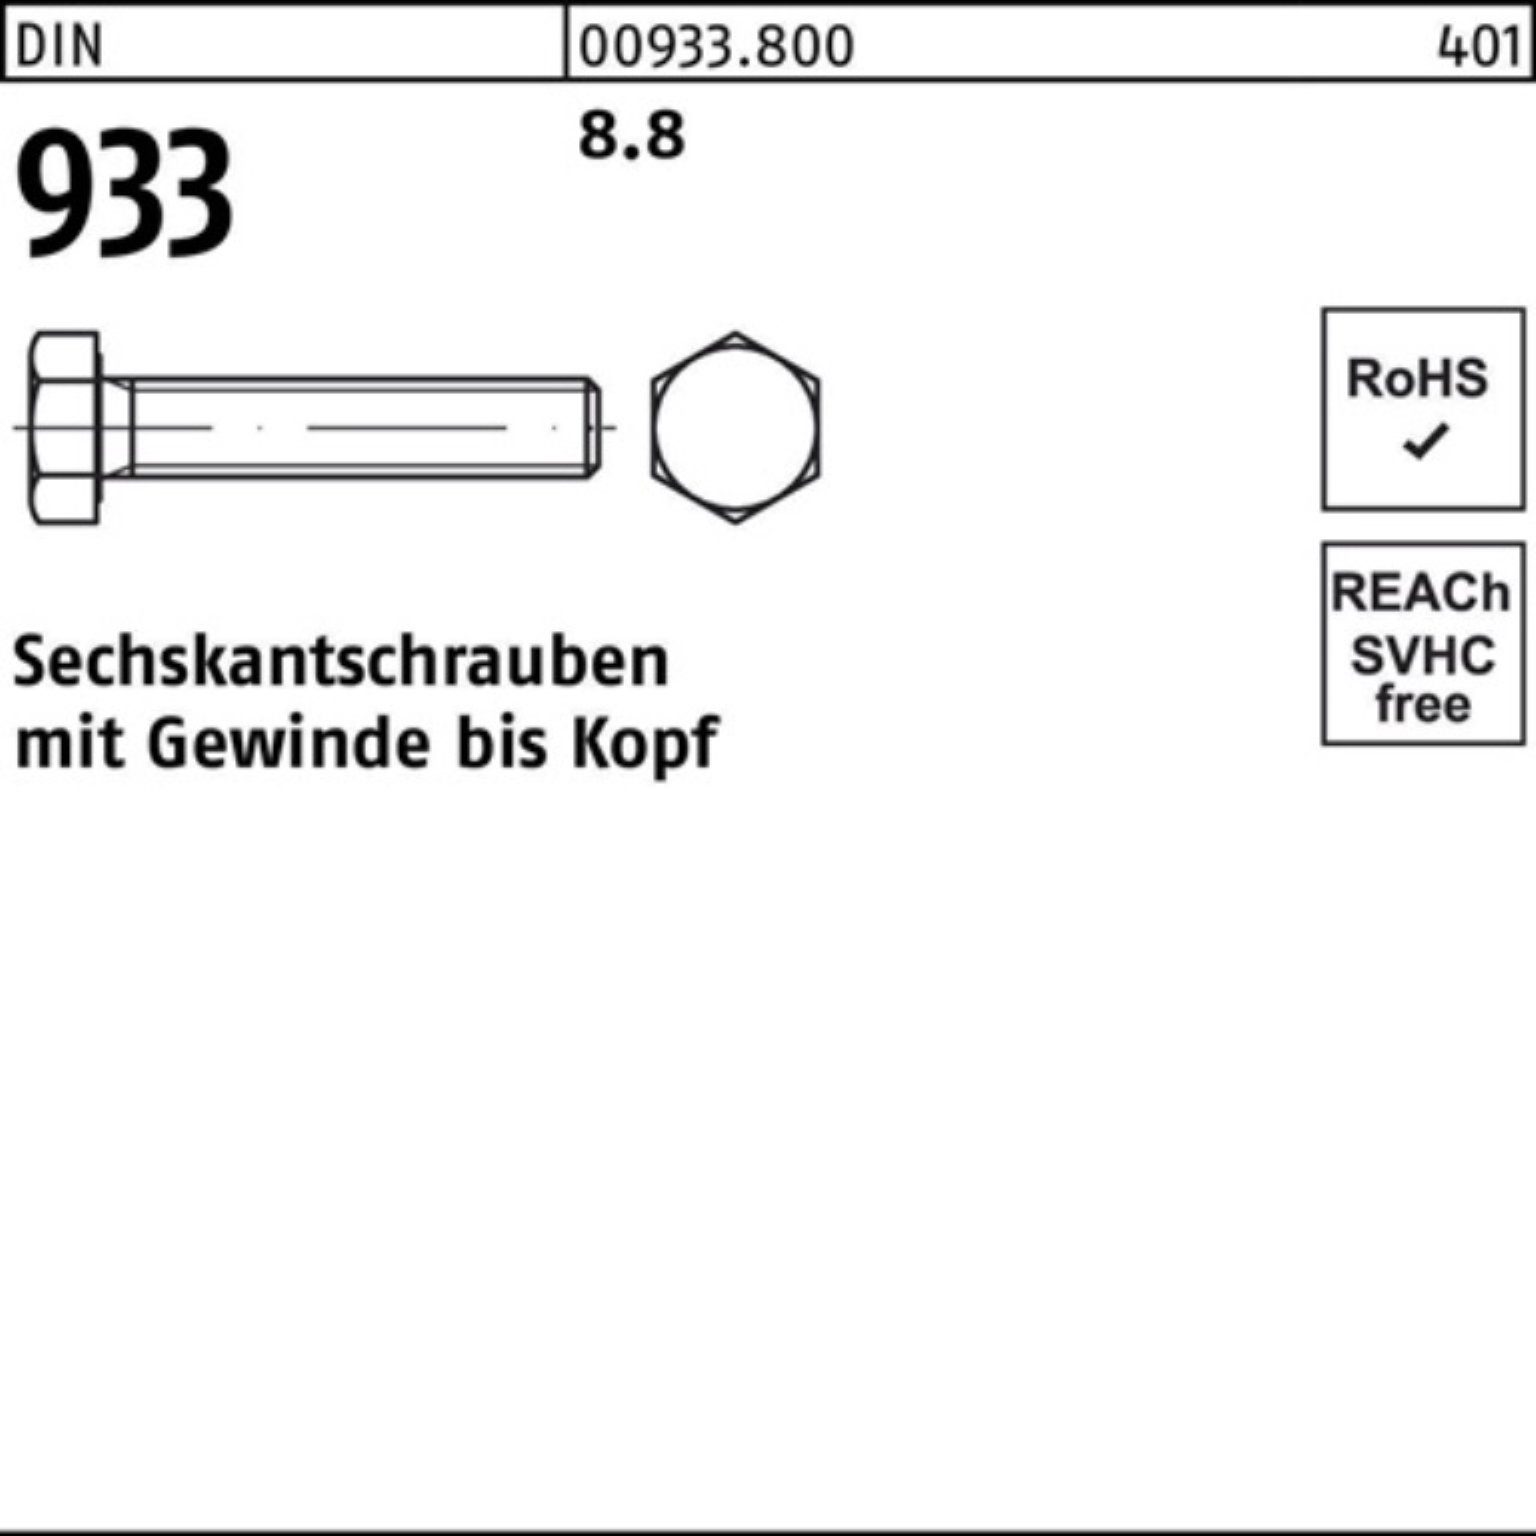 Reyher Sechskantschraube 65 933 M24x Sechskantschraube Stück 8.8 VG 100er 933 DIN 25 Pack DIN